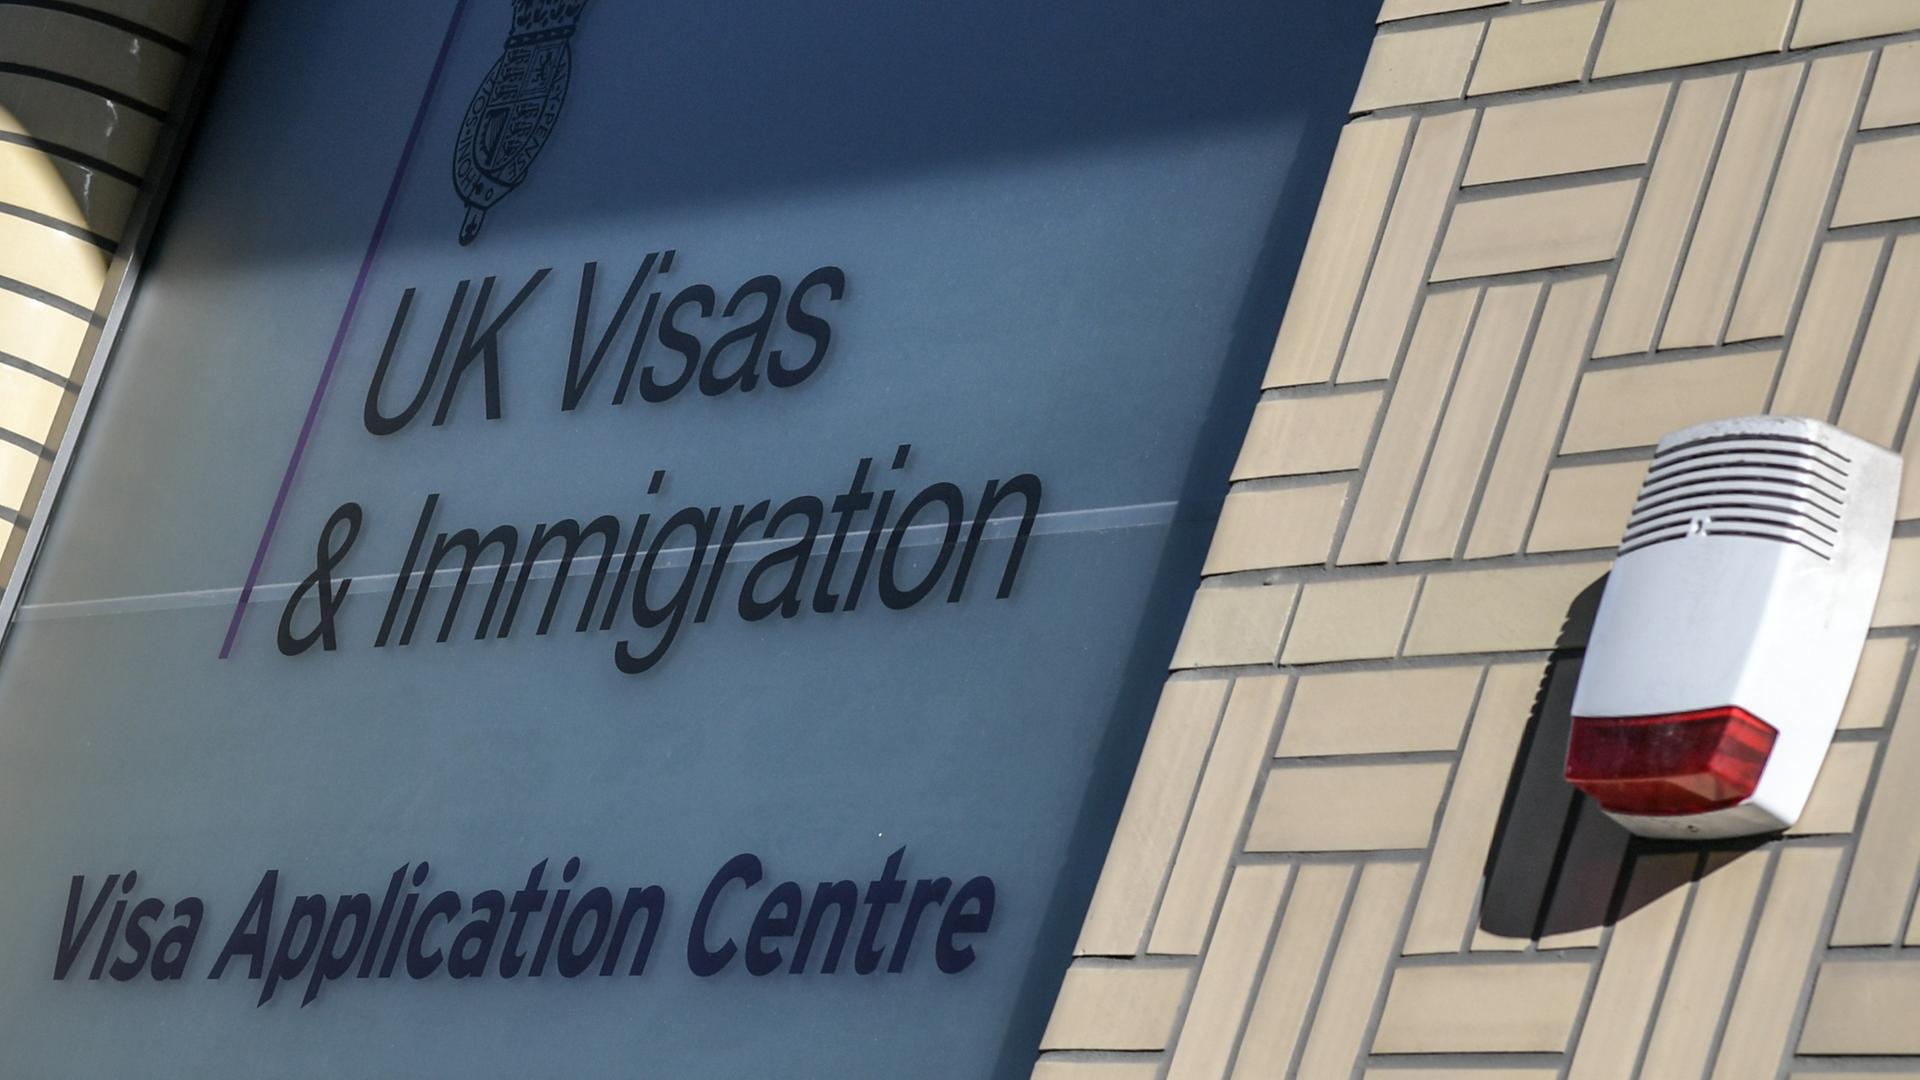 UK Visas und Immigration steht auf einer Scheibe eines Visa Application Centre.